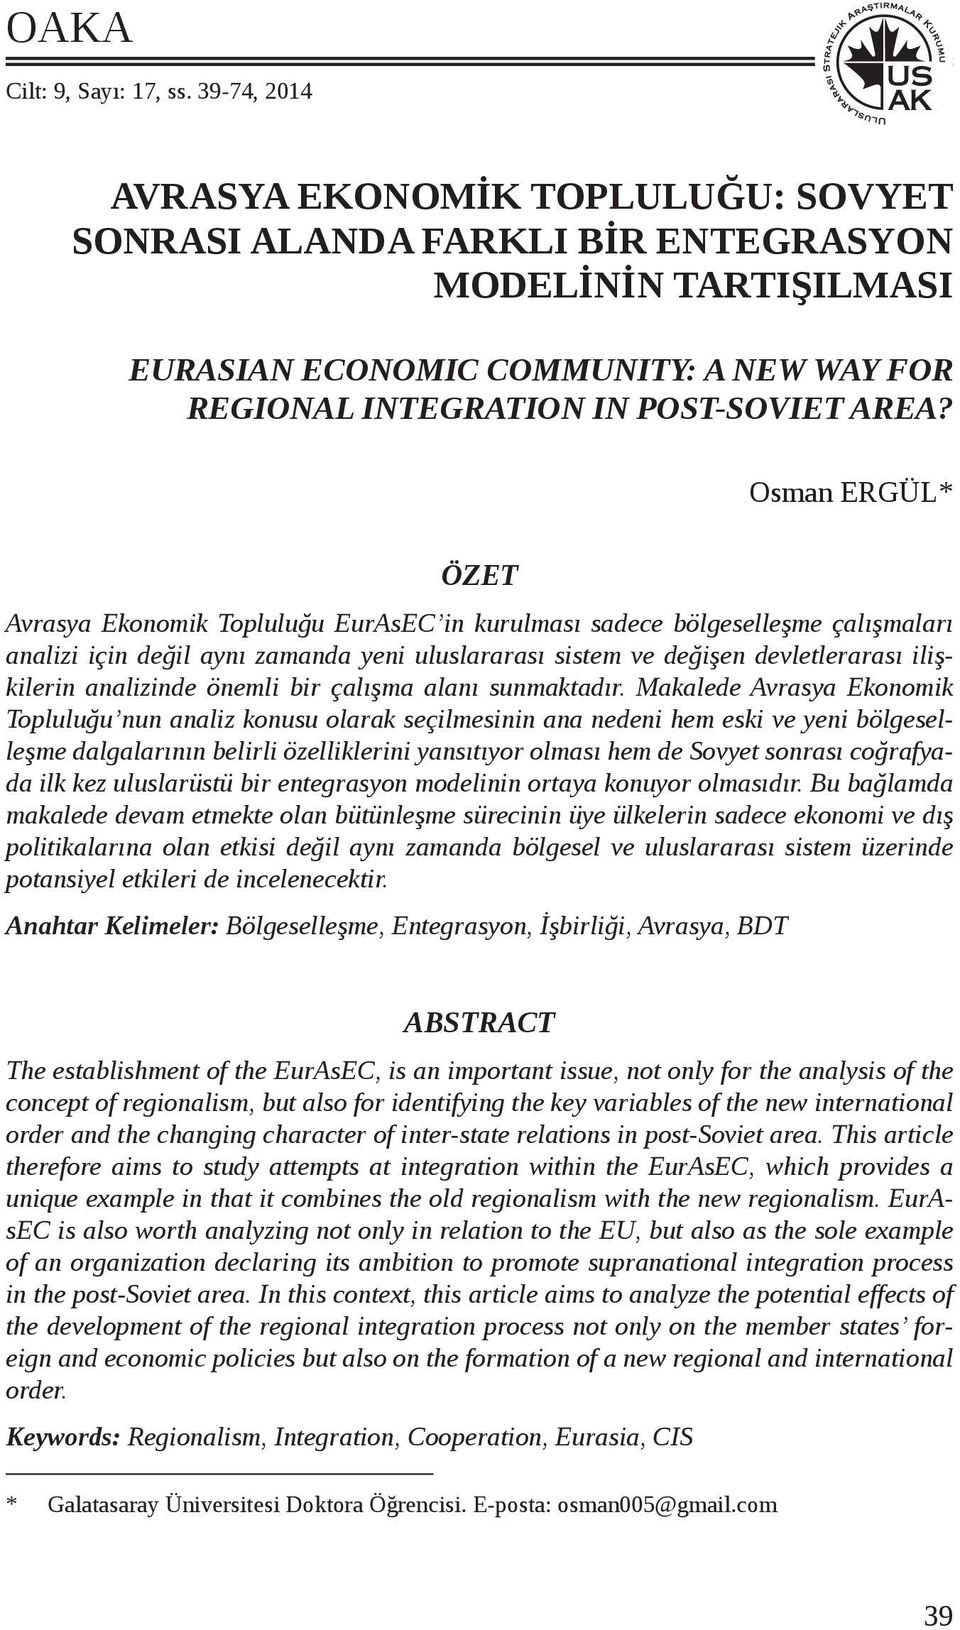 Osman ERGÜL* ÖZET Avrasya Ekonomik Topluluğu EurAsEC in kurulması sadece bölgeselleşme çalışmaları analizi için değil aynı zamanda yeni uluslararası sistem ve değişen devletlerarası ilişkilerin